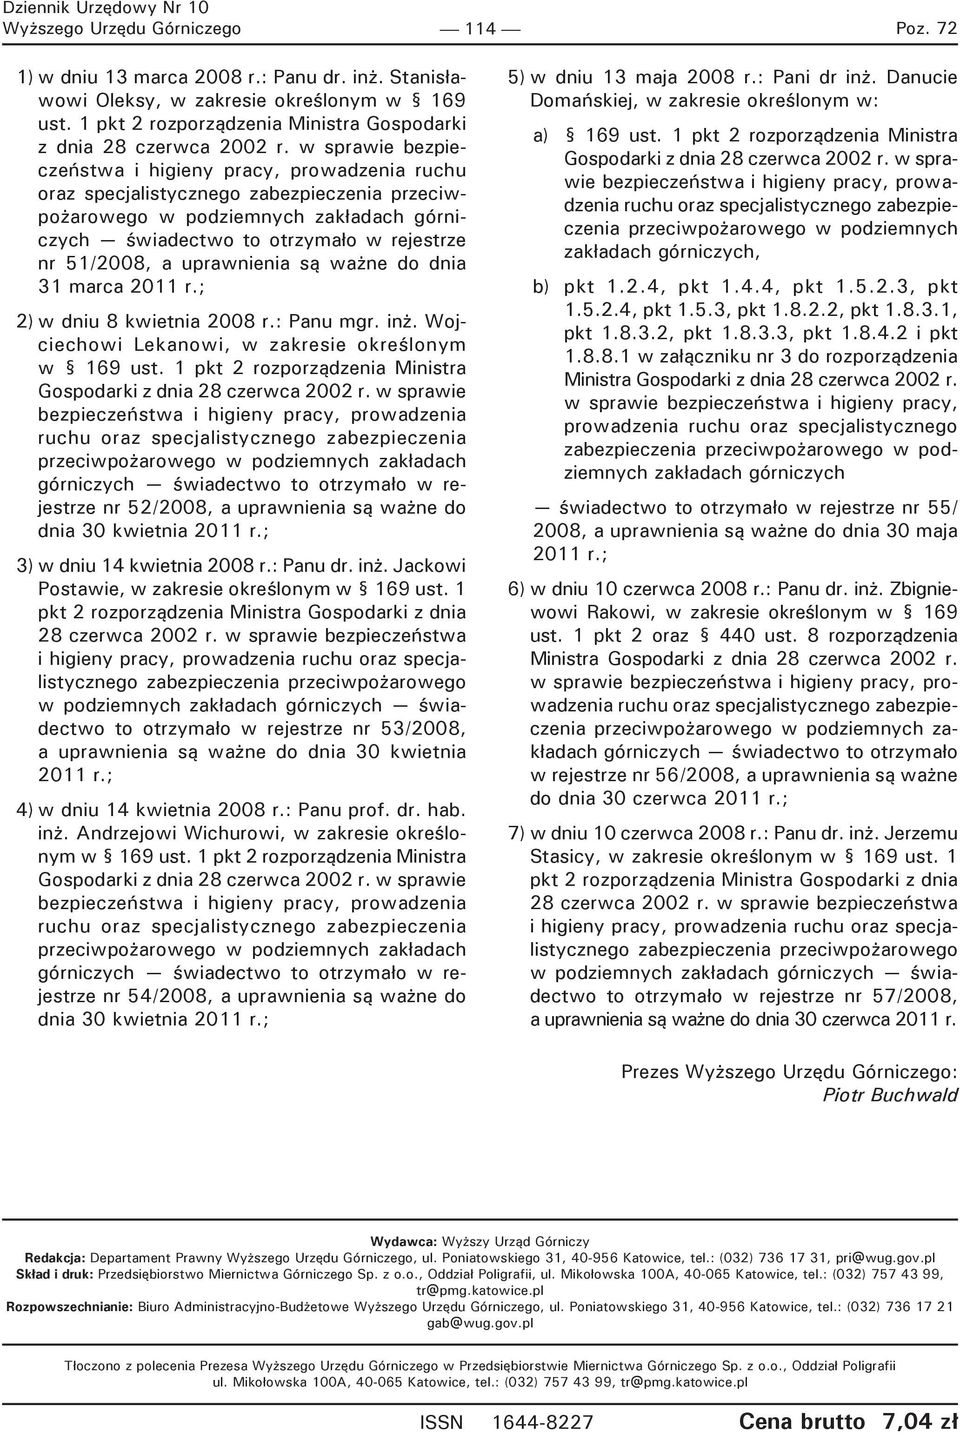 a uprawnienia są ważne do dnia 31 marca 2011 r.; 2) w dniu 8 kwietnia 2008 r.: Panu mgr. inż. Wojciechowi Lekanowi, w zakresie określonym w 169 ust.